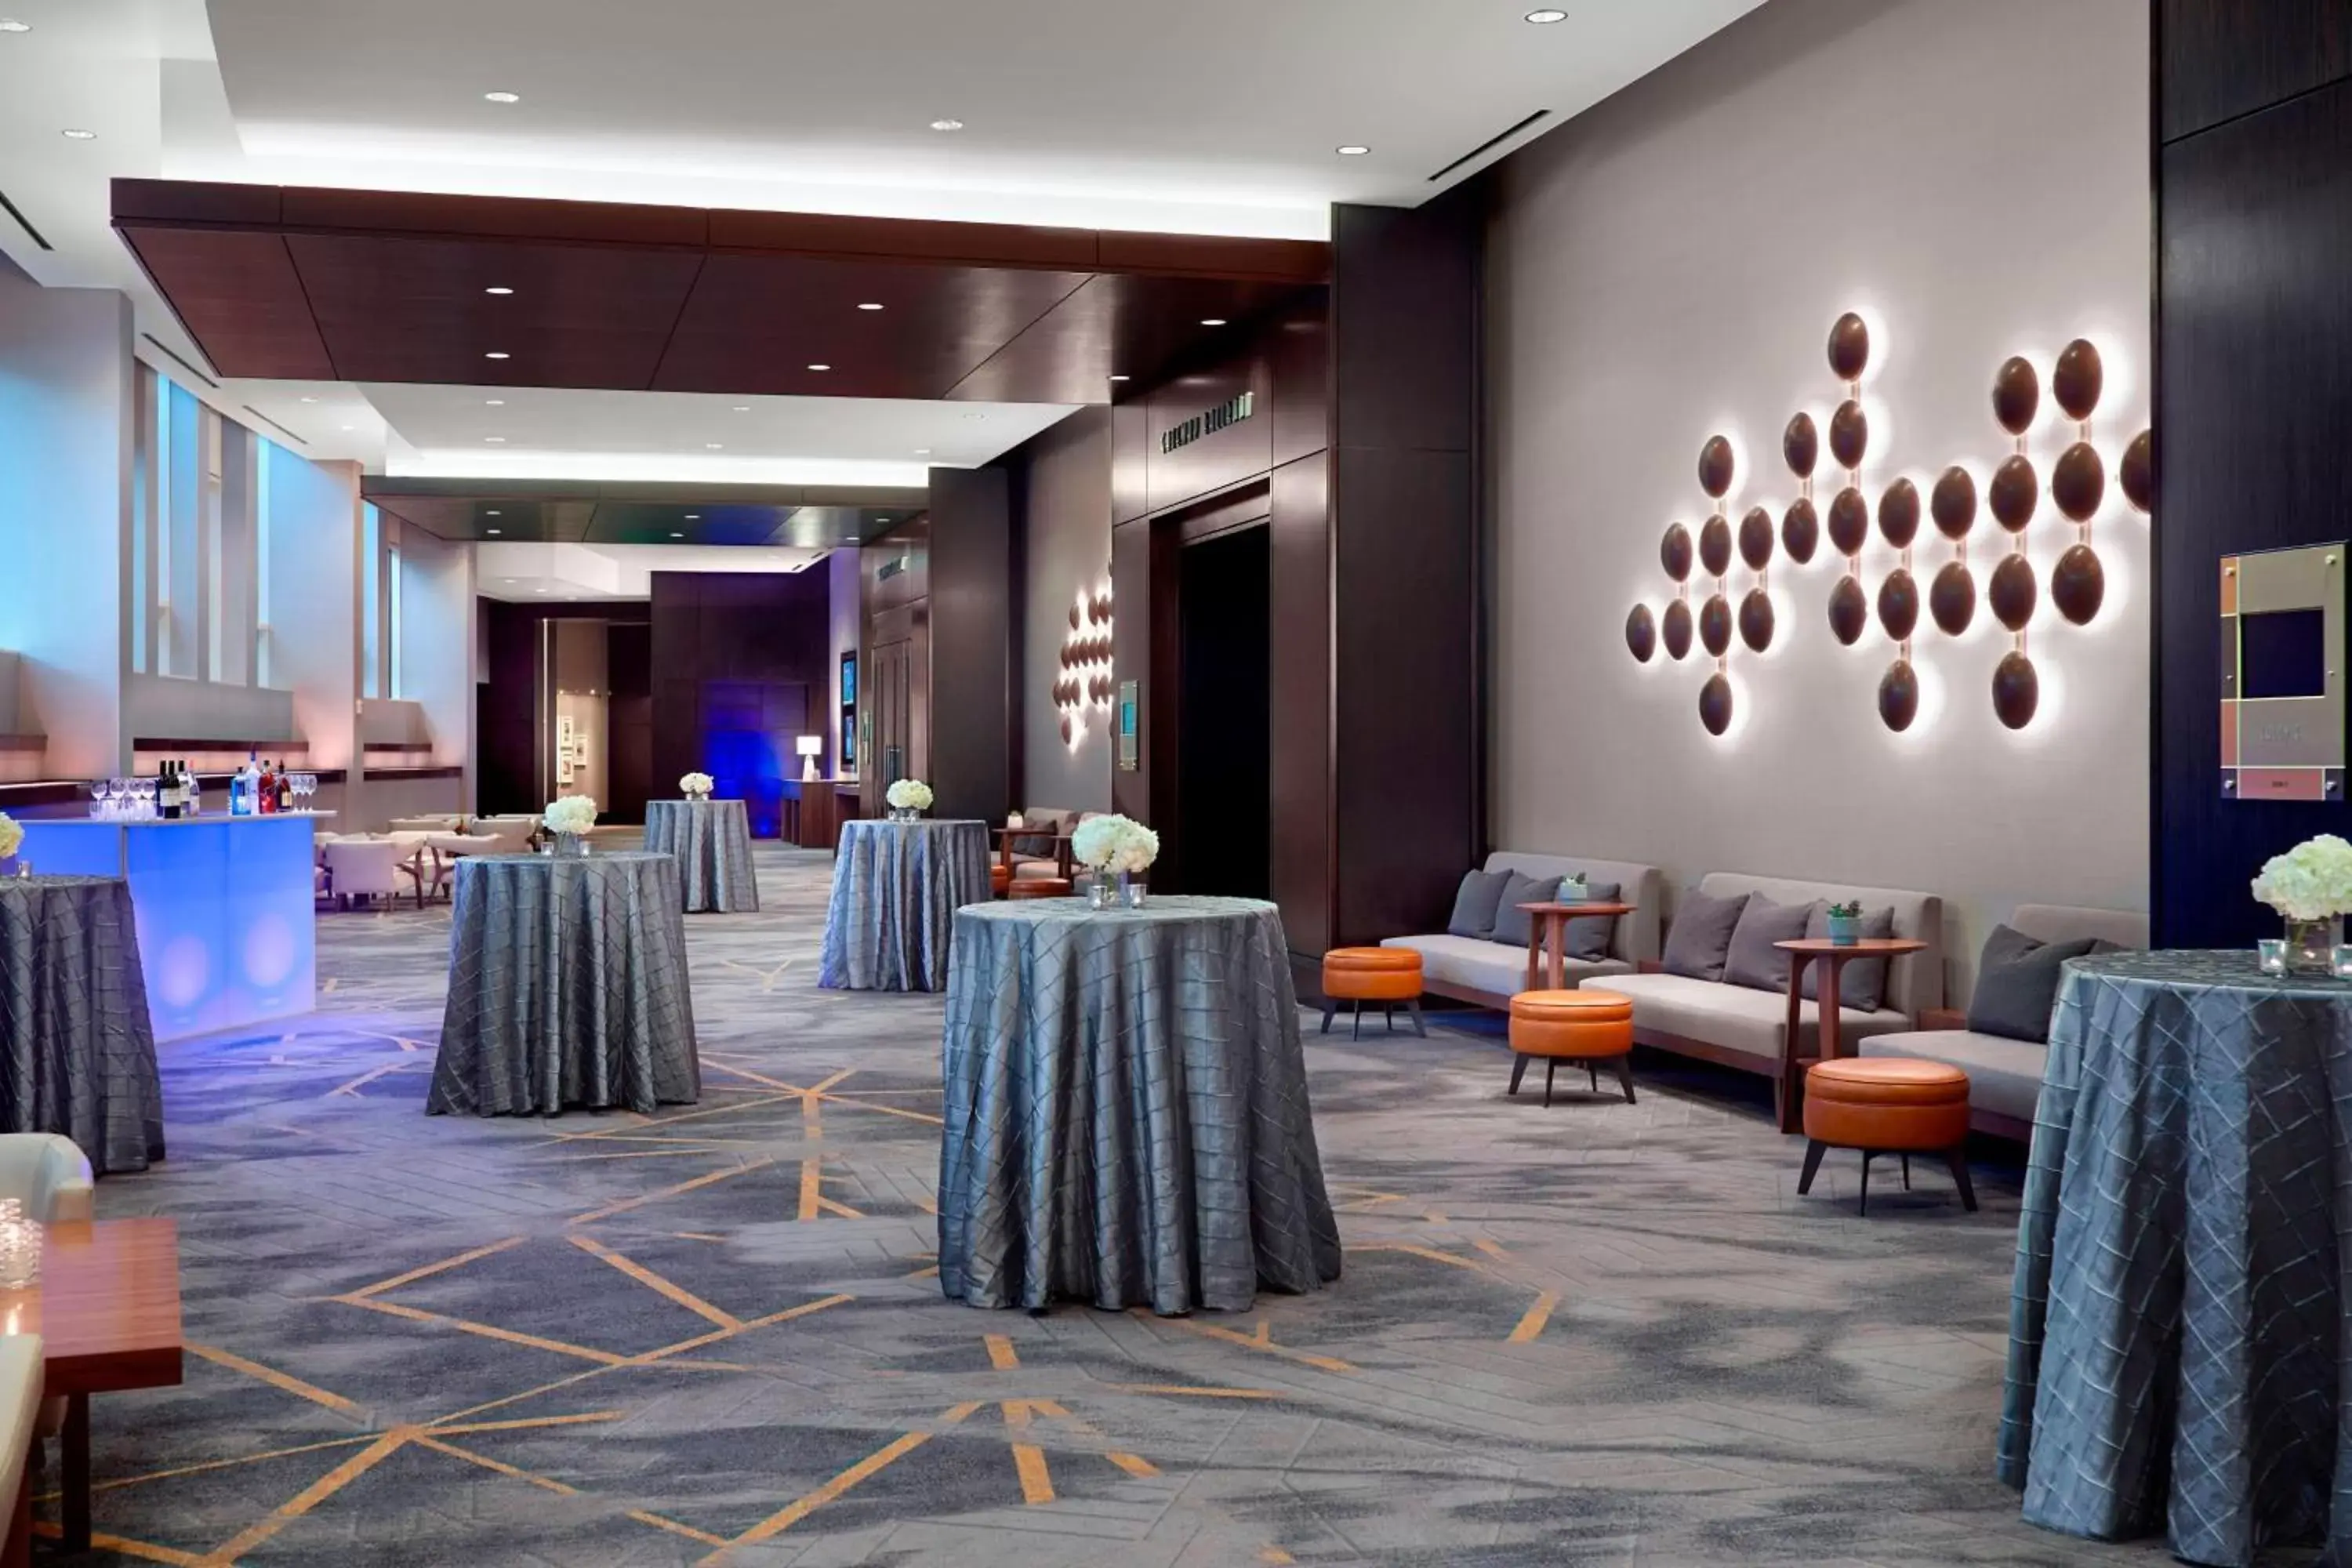 Banquet/Function facilities, Banquet Facilities in Atlanta Airport Marriott Gateway